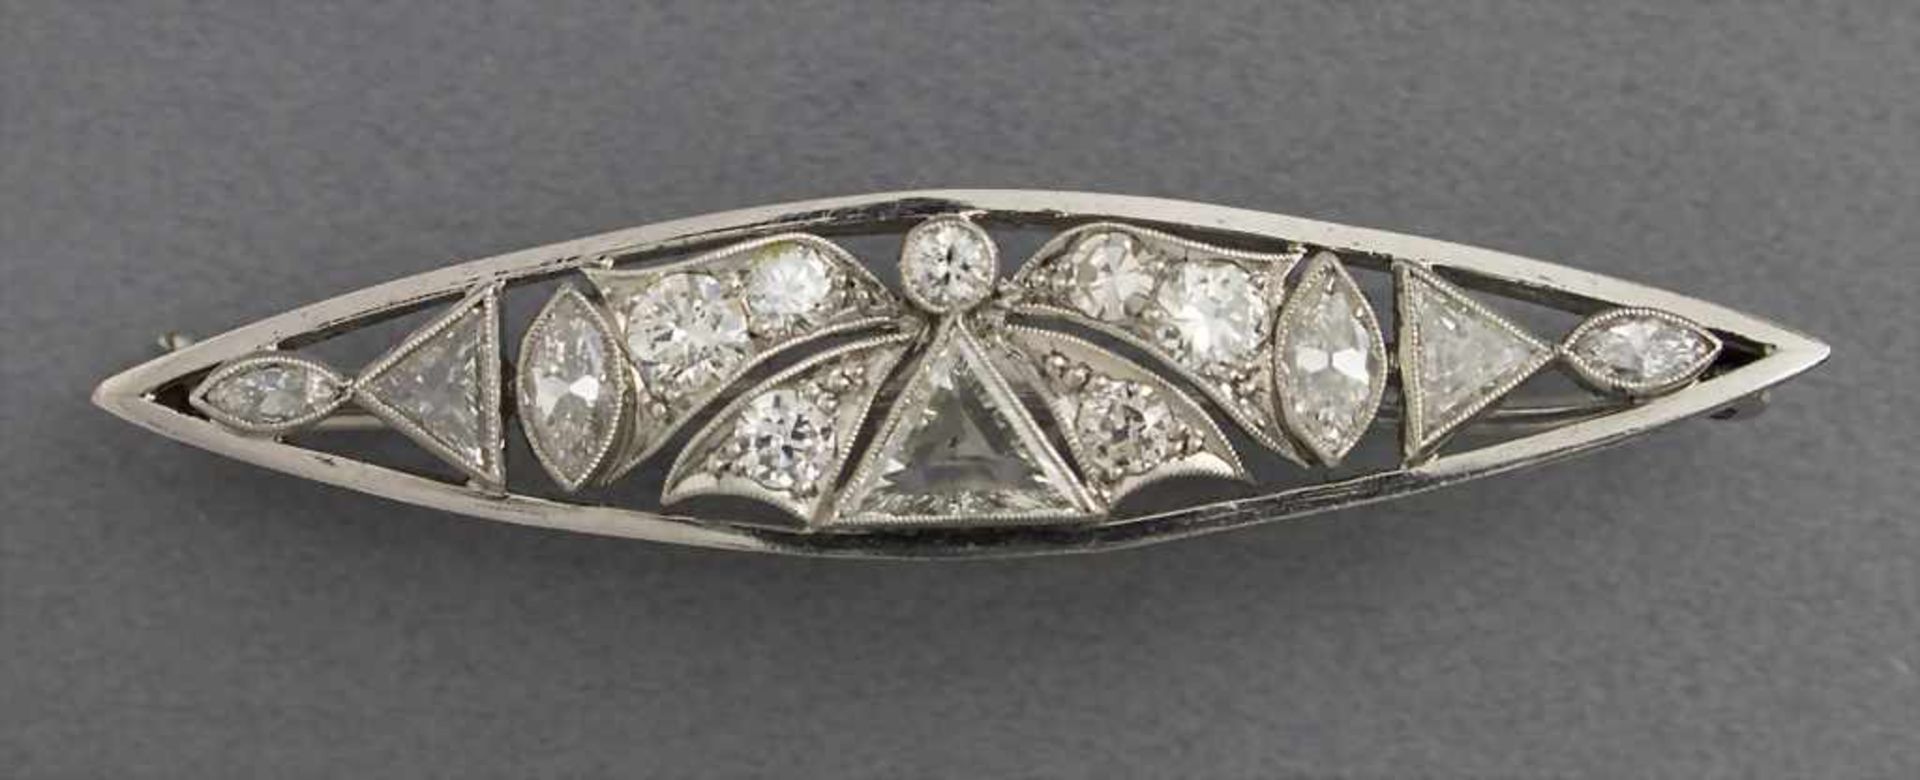 Art Déco Platin-Brosche / Art Déco Platinum-Brooch, um 1926Material: Platin gepunzt mit Diamanten in